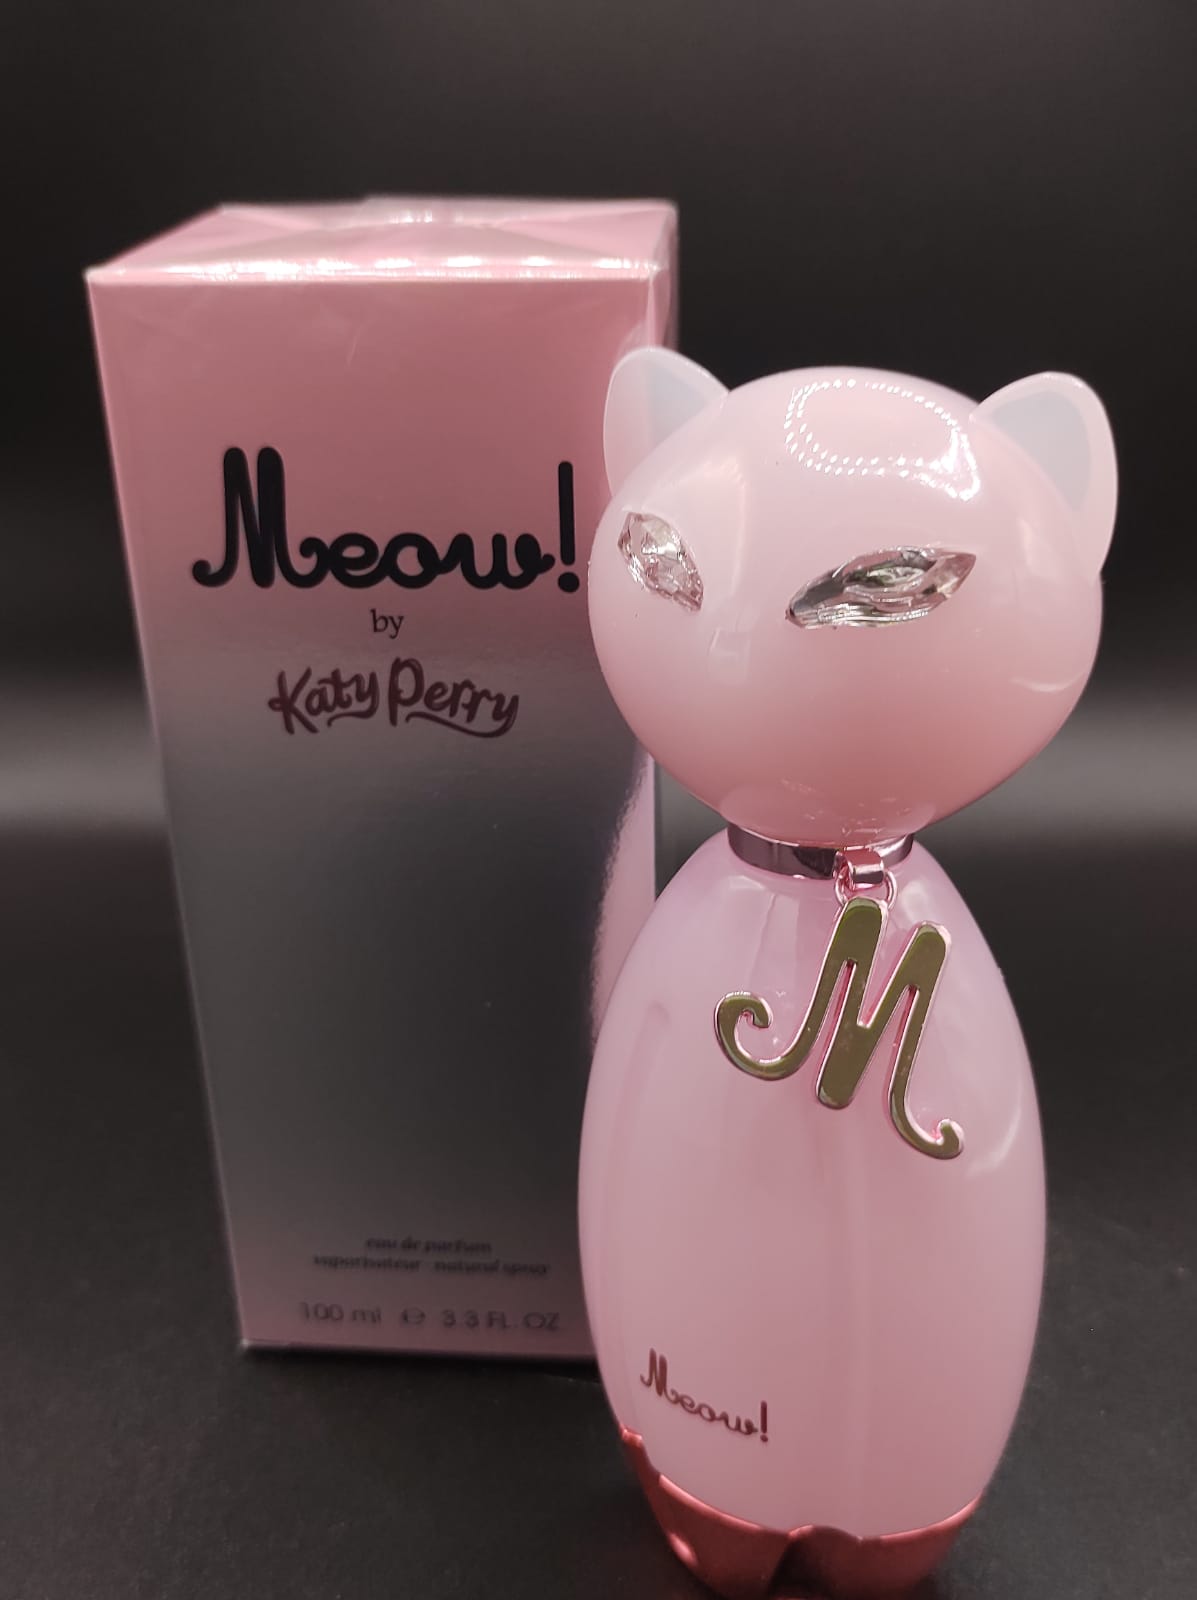 Katy Perry Meow, 100 ml. - Perfume Club México